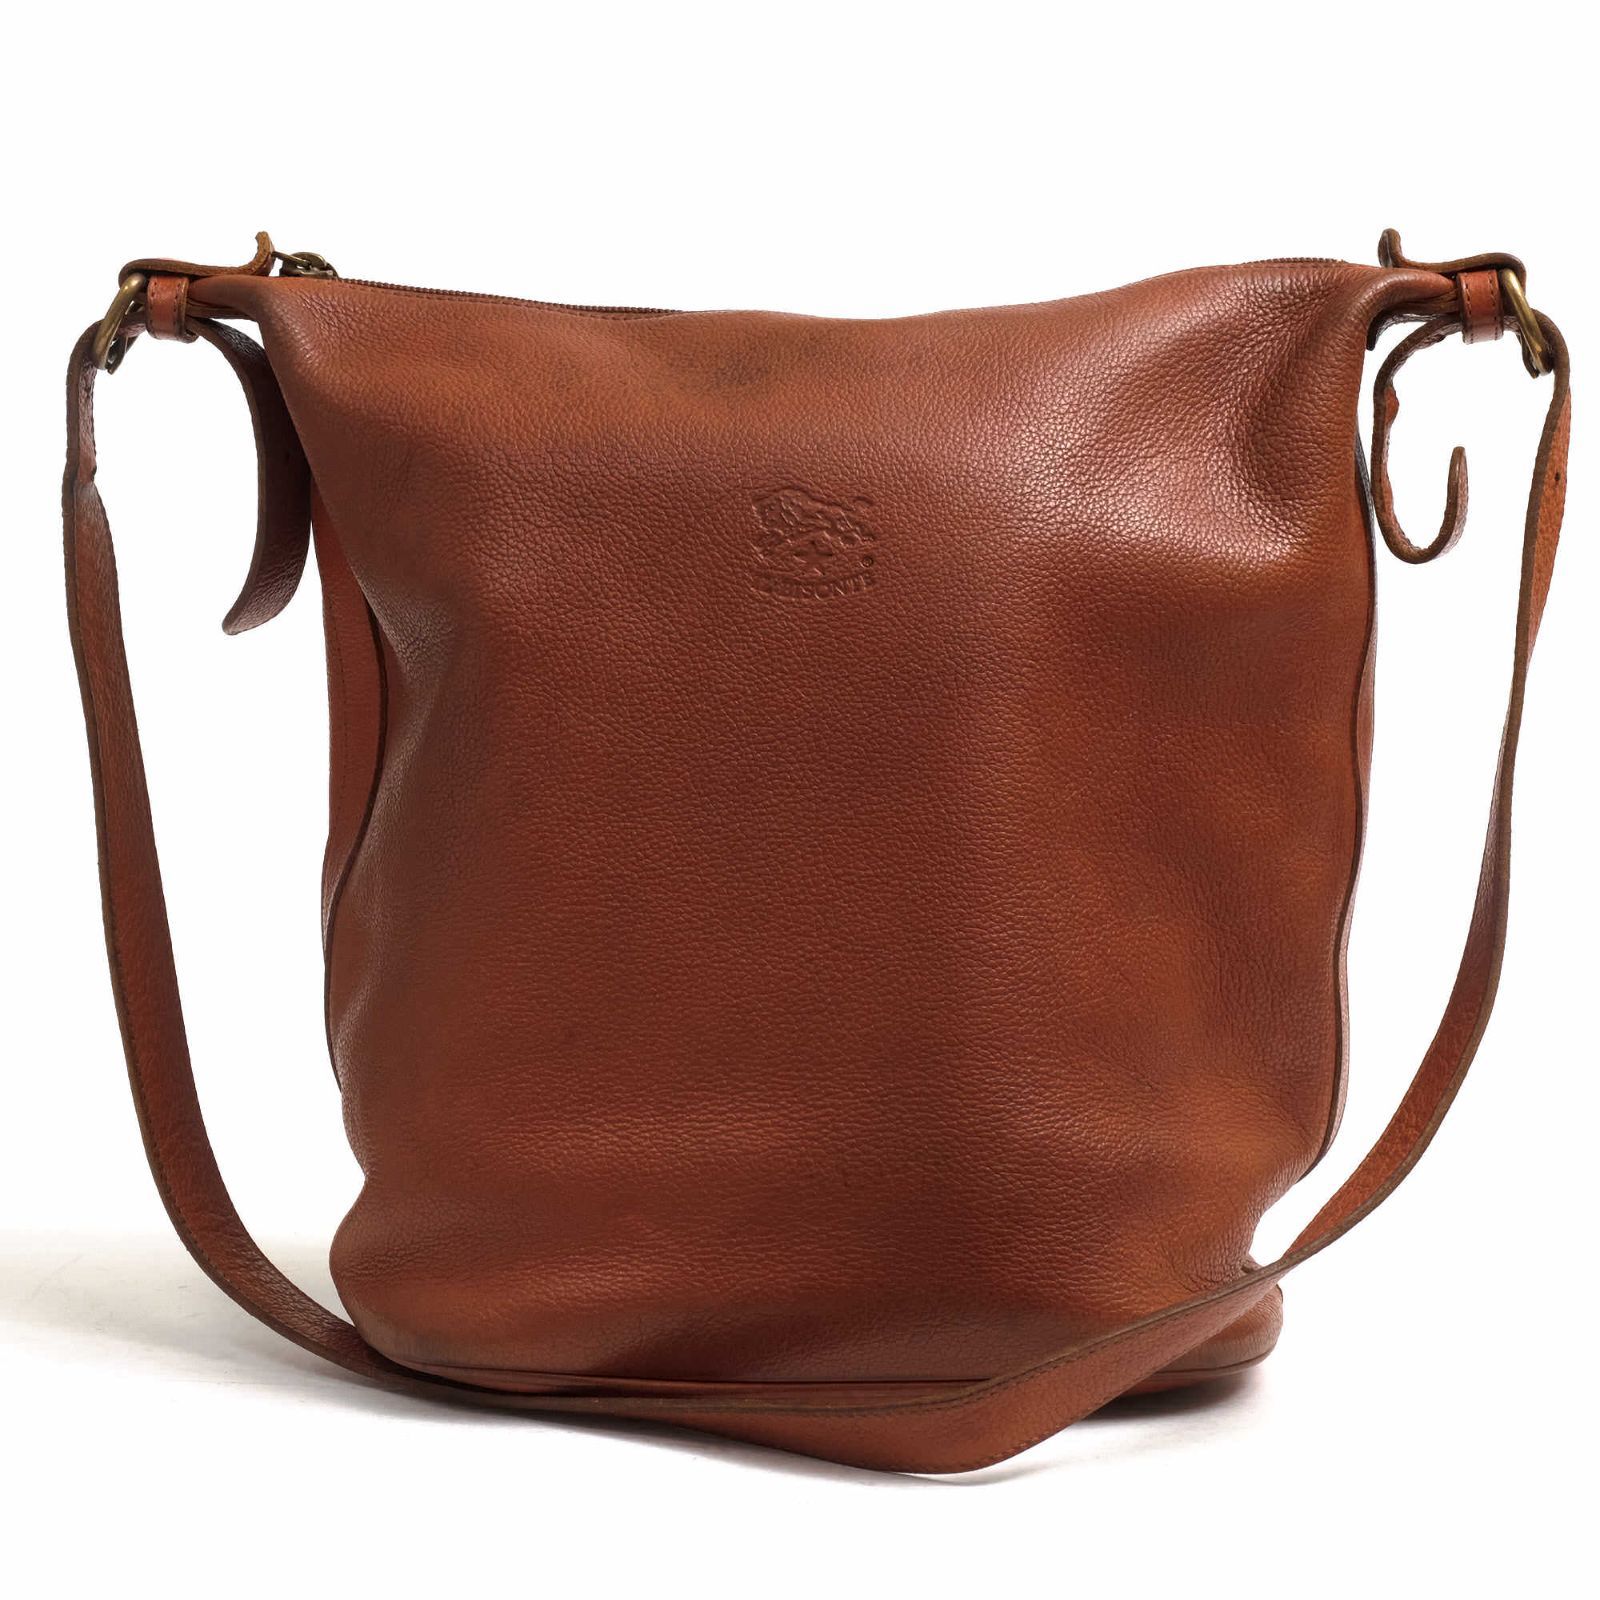 イルビゾンテ／IL BISONTE バッグ ショルダーバッグ 鞄 レディース 女性 女性用レザー 革 本革 ブラウン 茶